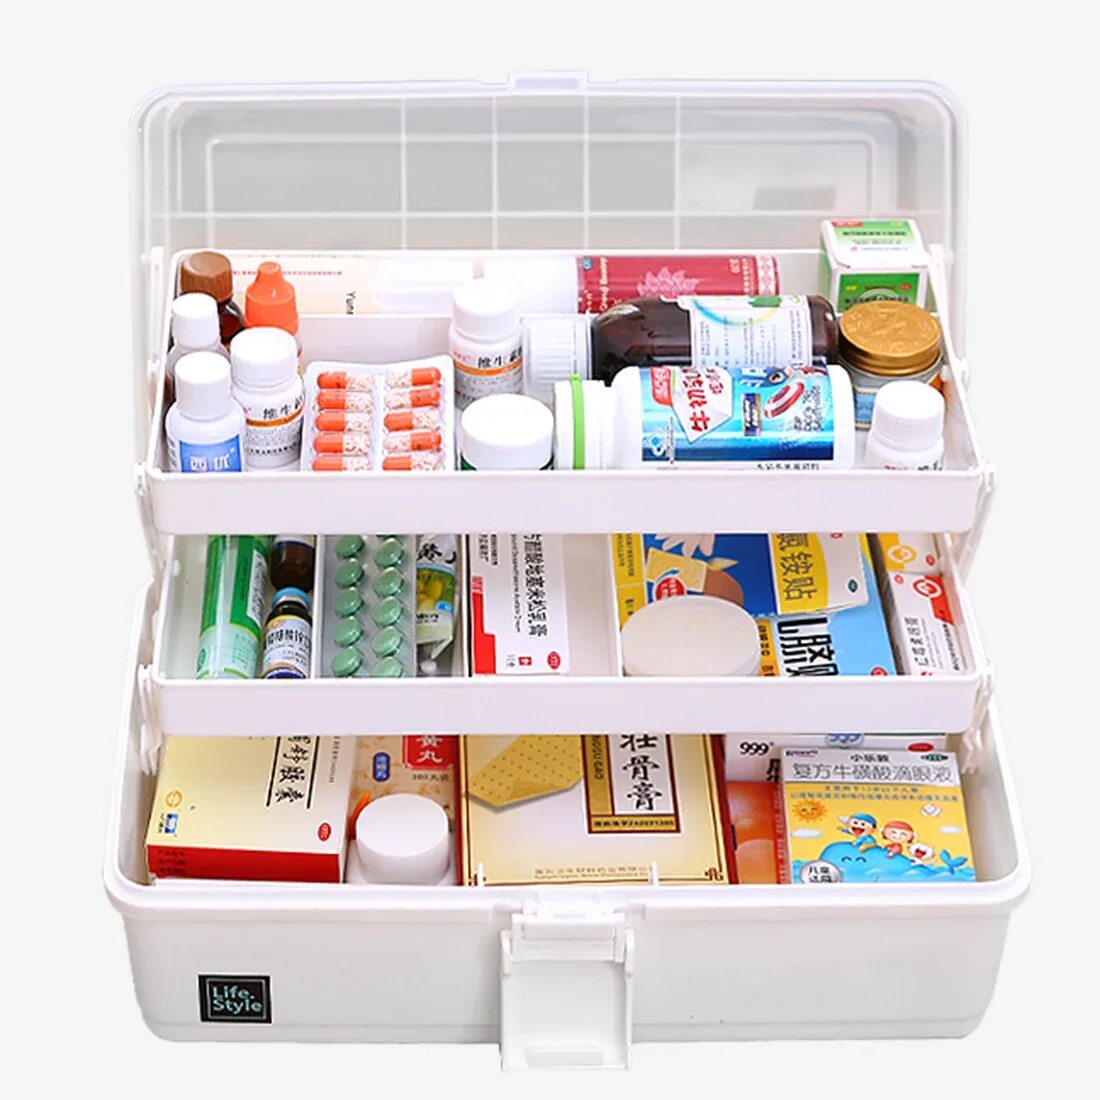 Организация хранения аптечных товаров. Ящик для медикаментов с675а. Аптечный ящик для медикаментов аш- т- 1330. Органайзер для лекарств HIPSTEEN. Ящик для медикаментов (аптечка) "Массимо".